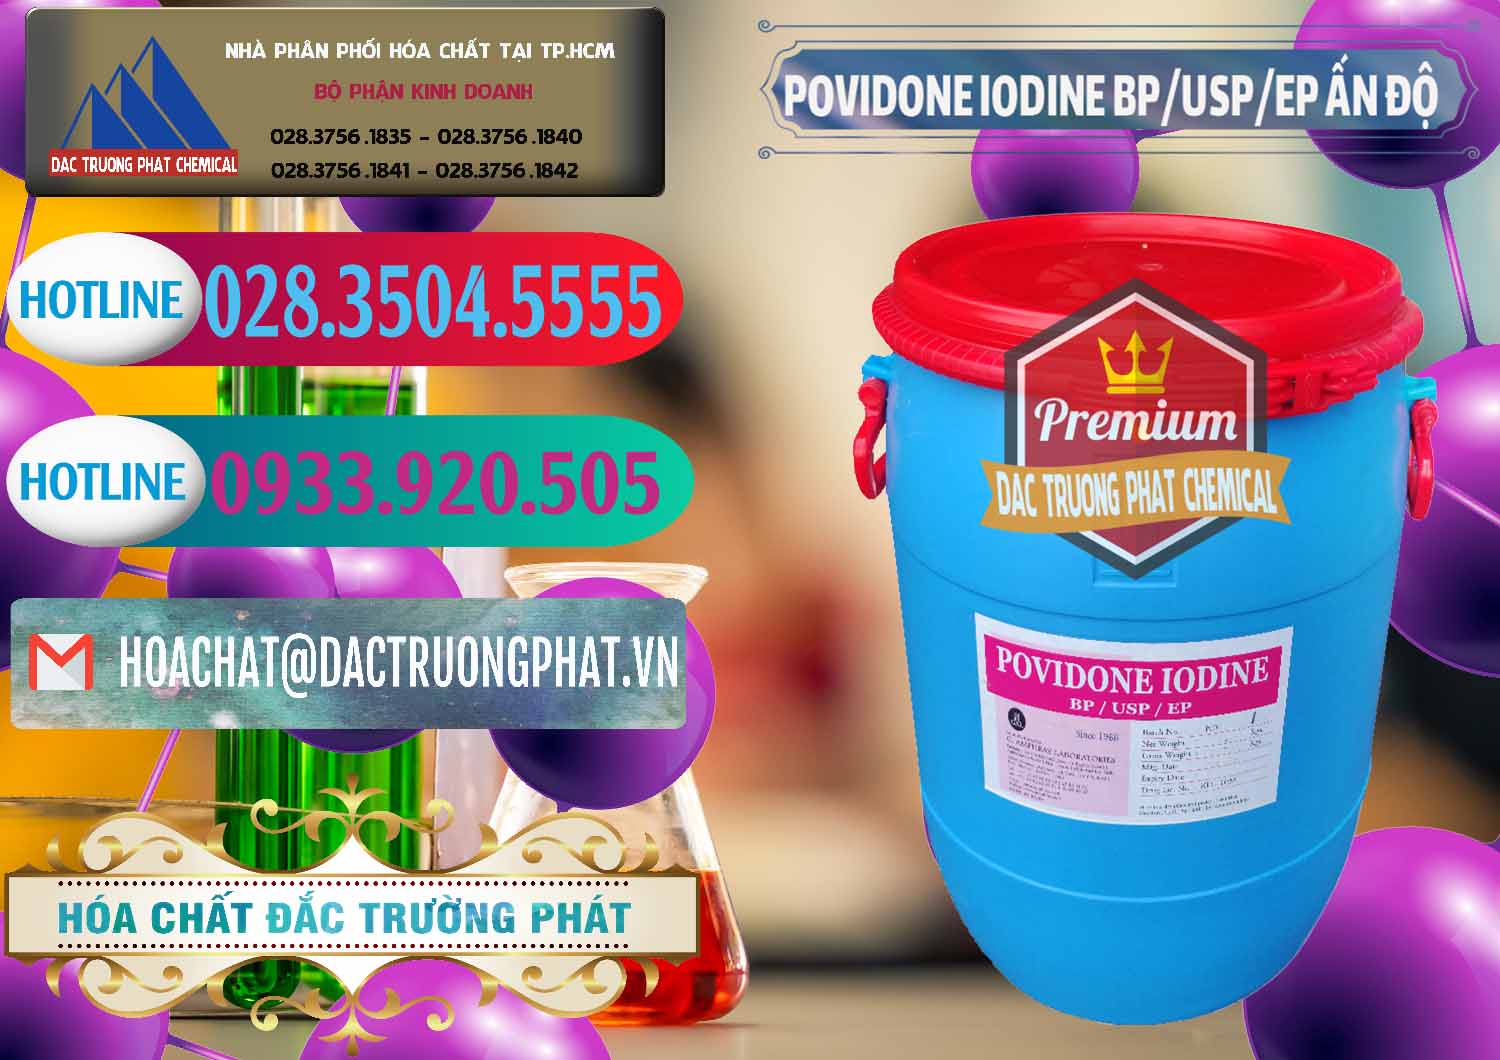 Công ty cung cấp - bán Povidone Iodine BP USP EP Ấn Độ India - 0318 - Nơi chuyên phân phối - bán hóa chất tại TP.HCM - truongphat.vn